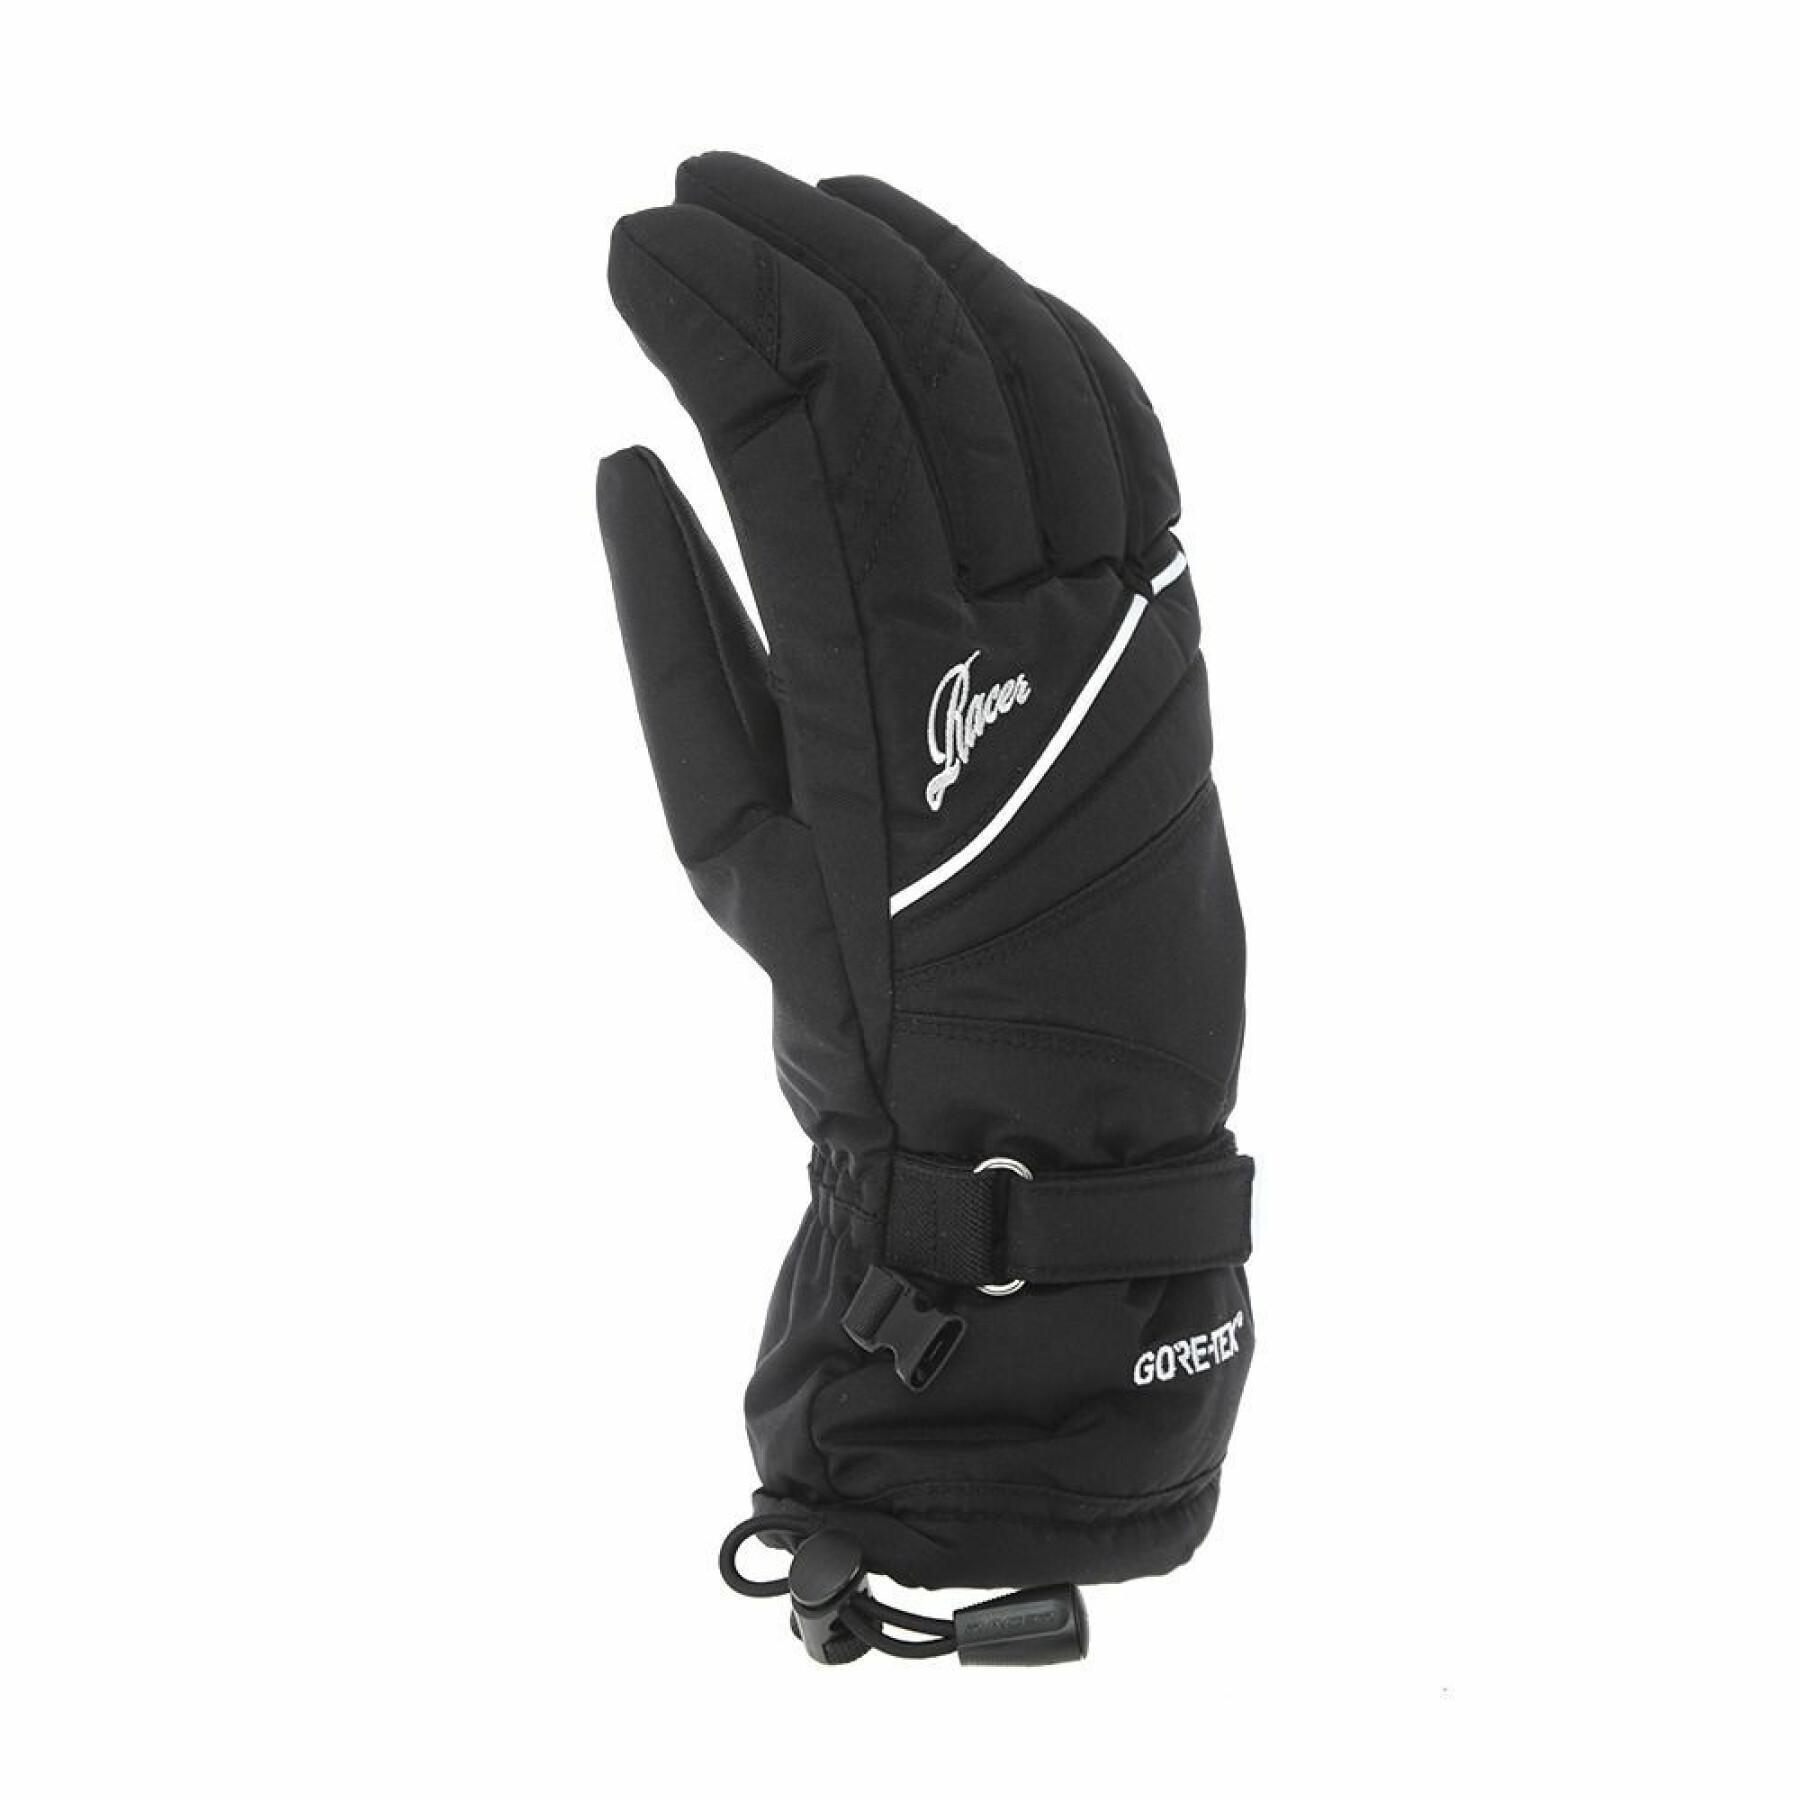 Women's ski gloves Racer gore-tex